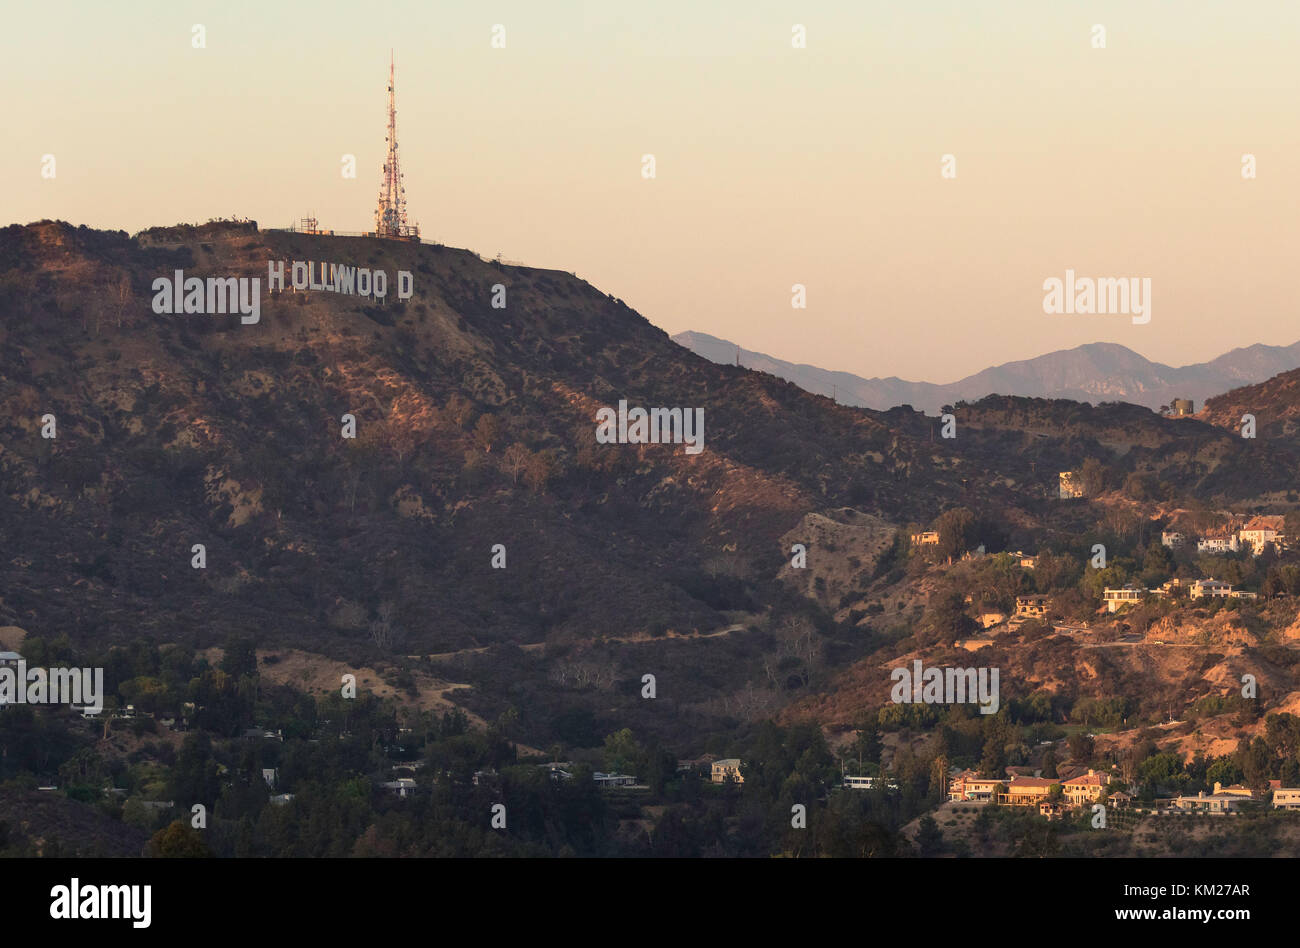 Icónico cartel de Hollywood se ve en las colinas de Los Angeles, California Foto de stock